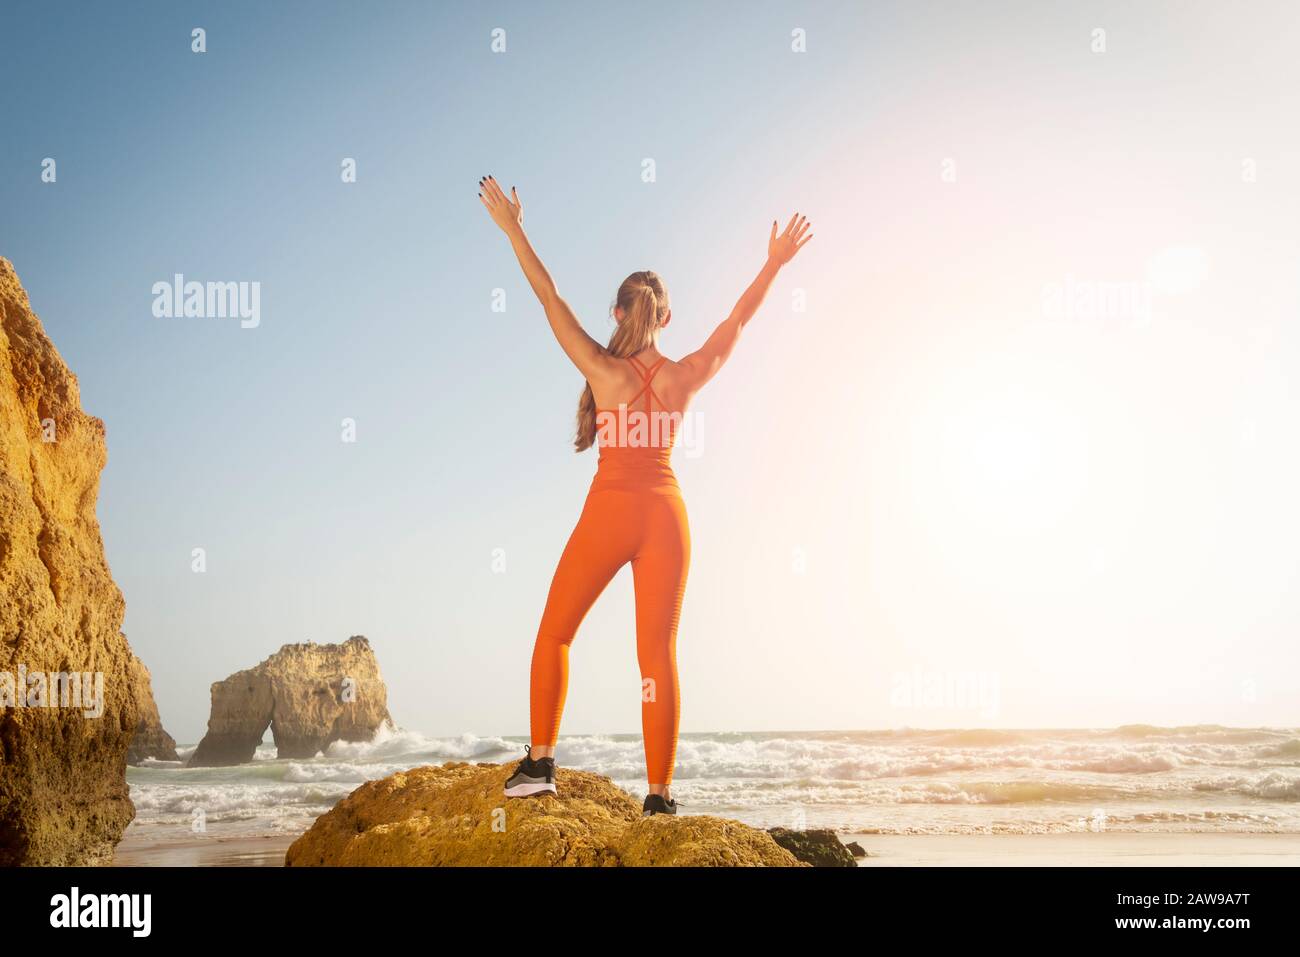 Vista posterior de una mujer en forma que lleva ropa deportiva naranja de pie sobre una roca junto al mar con sus brazos levantados en celebración, libertad. Foto de stock